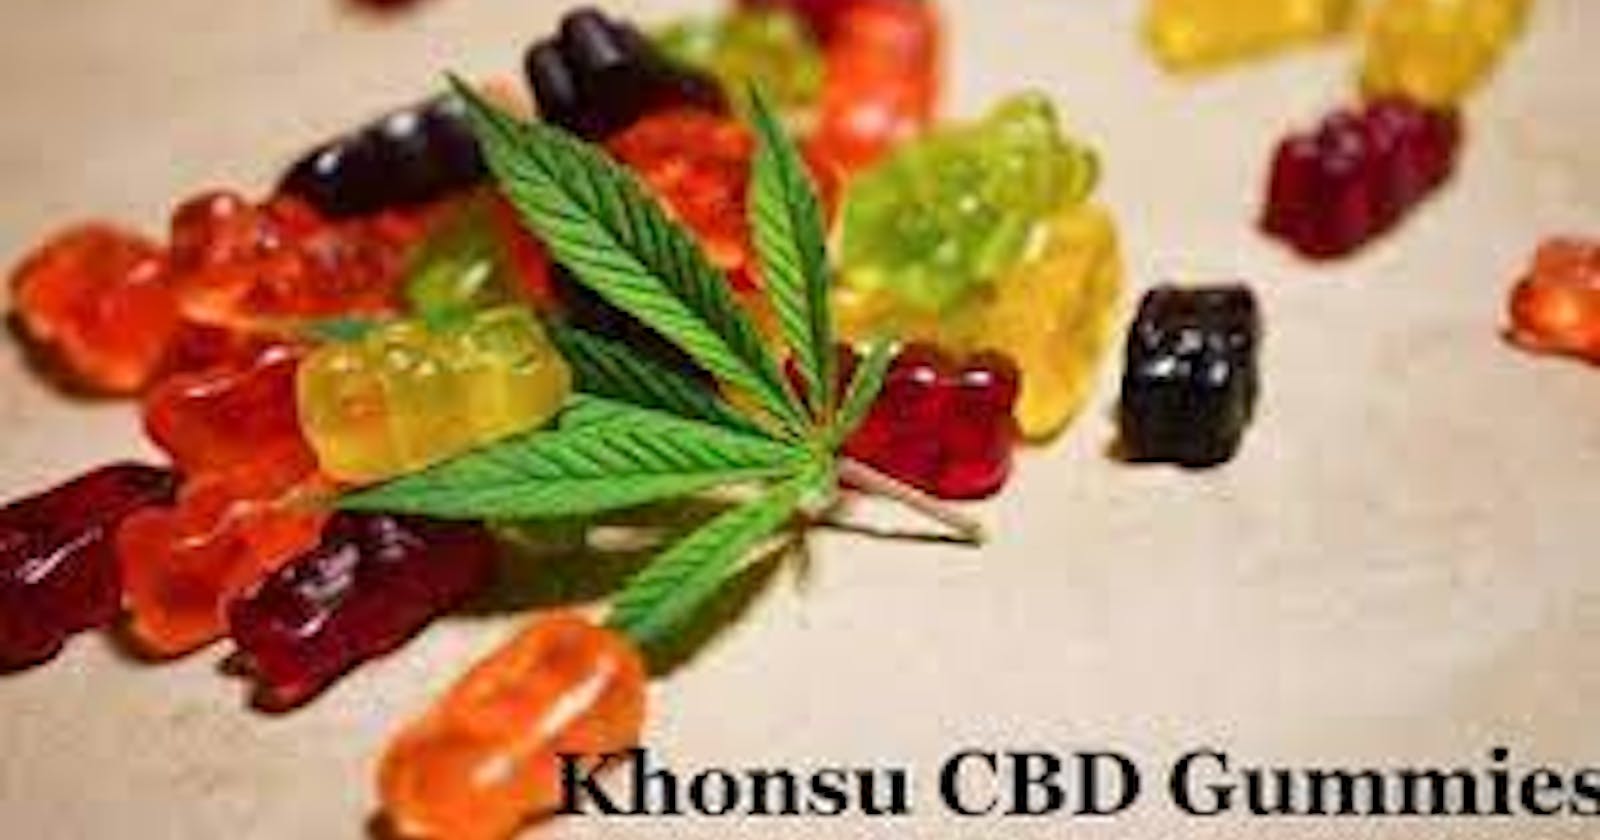 Khonsu Formula CBD Gummies Price and Review